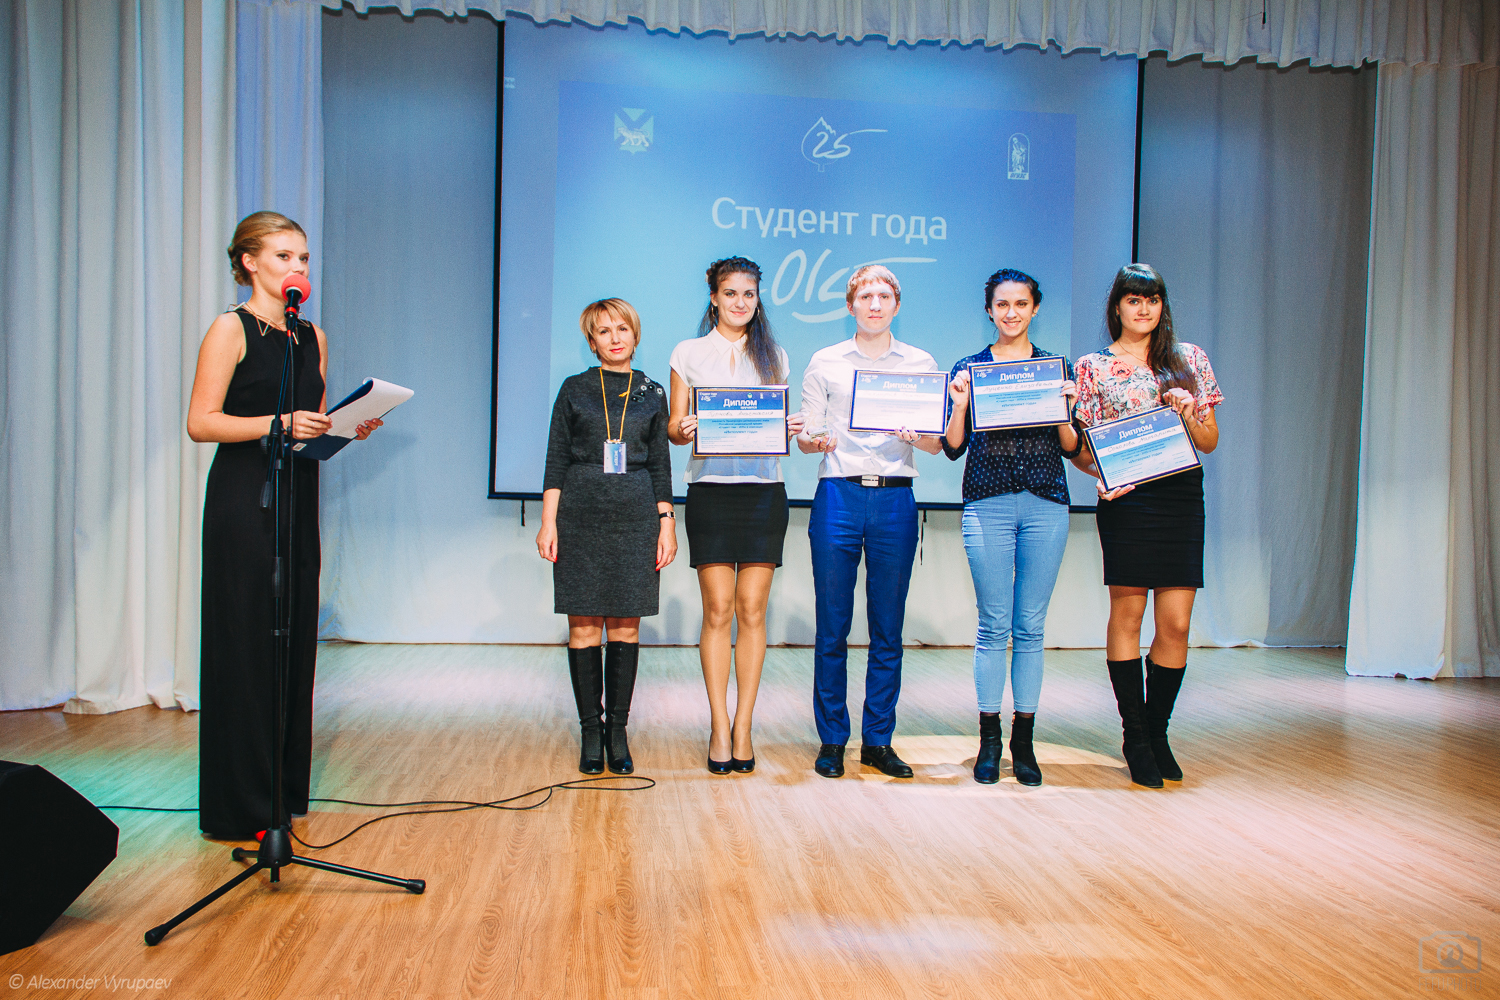 9 приморцев поборются за национальную премию "Студент года"